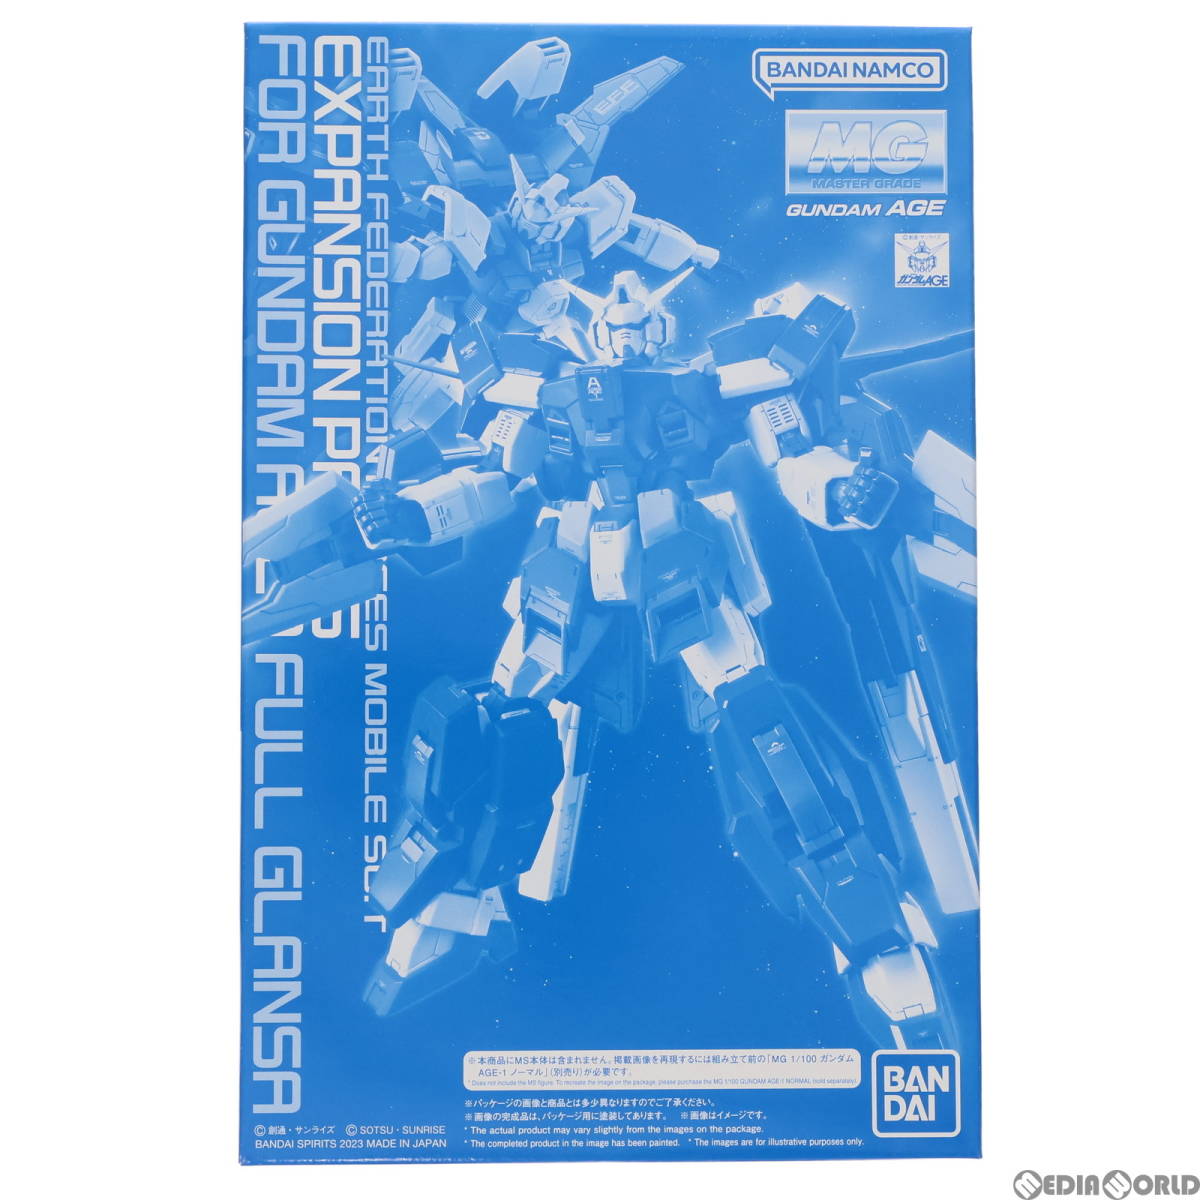 [ б/у ][PTM] premium Bandai ограничение MG 1/100 AGE-1G Gundam AGE-1f legrand sa для повышение детали Mobile Suit Gundam AGE(eiji) пластиковая модель 